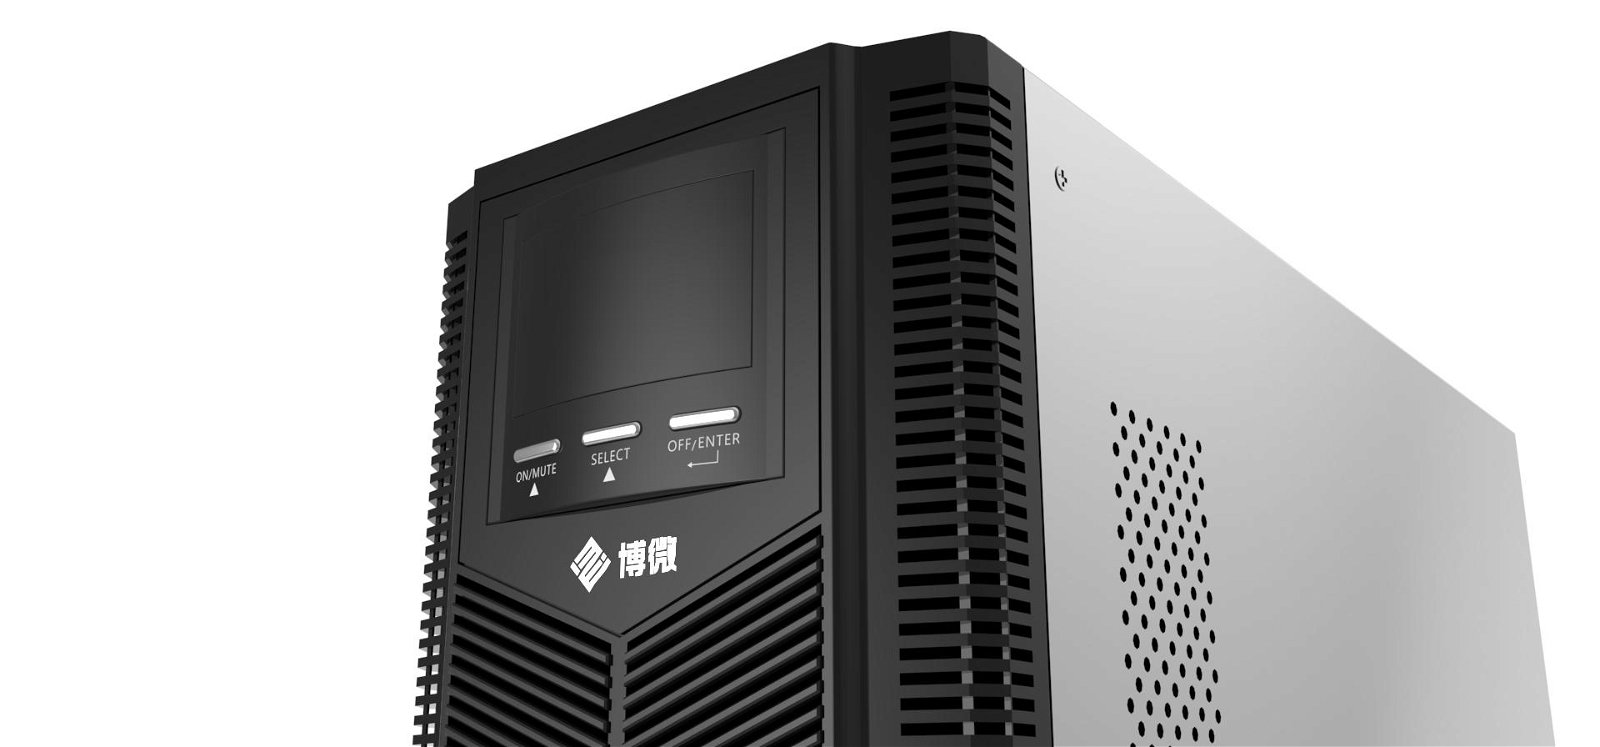 安徽博微智能電氣有限公司高頻塔式UPS 2